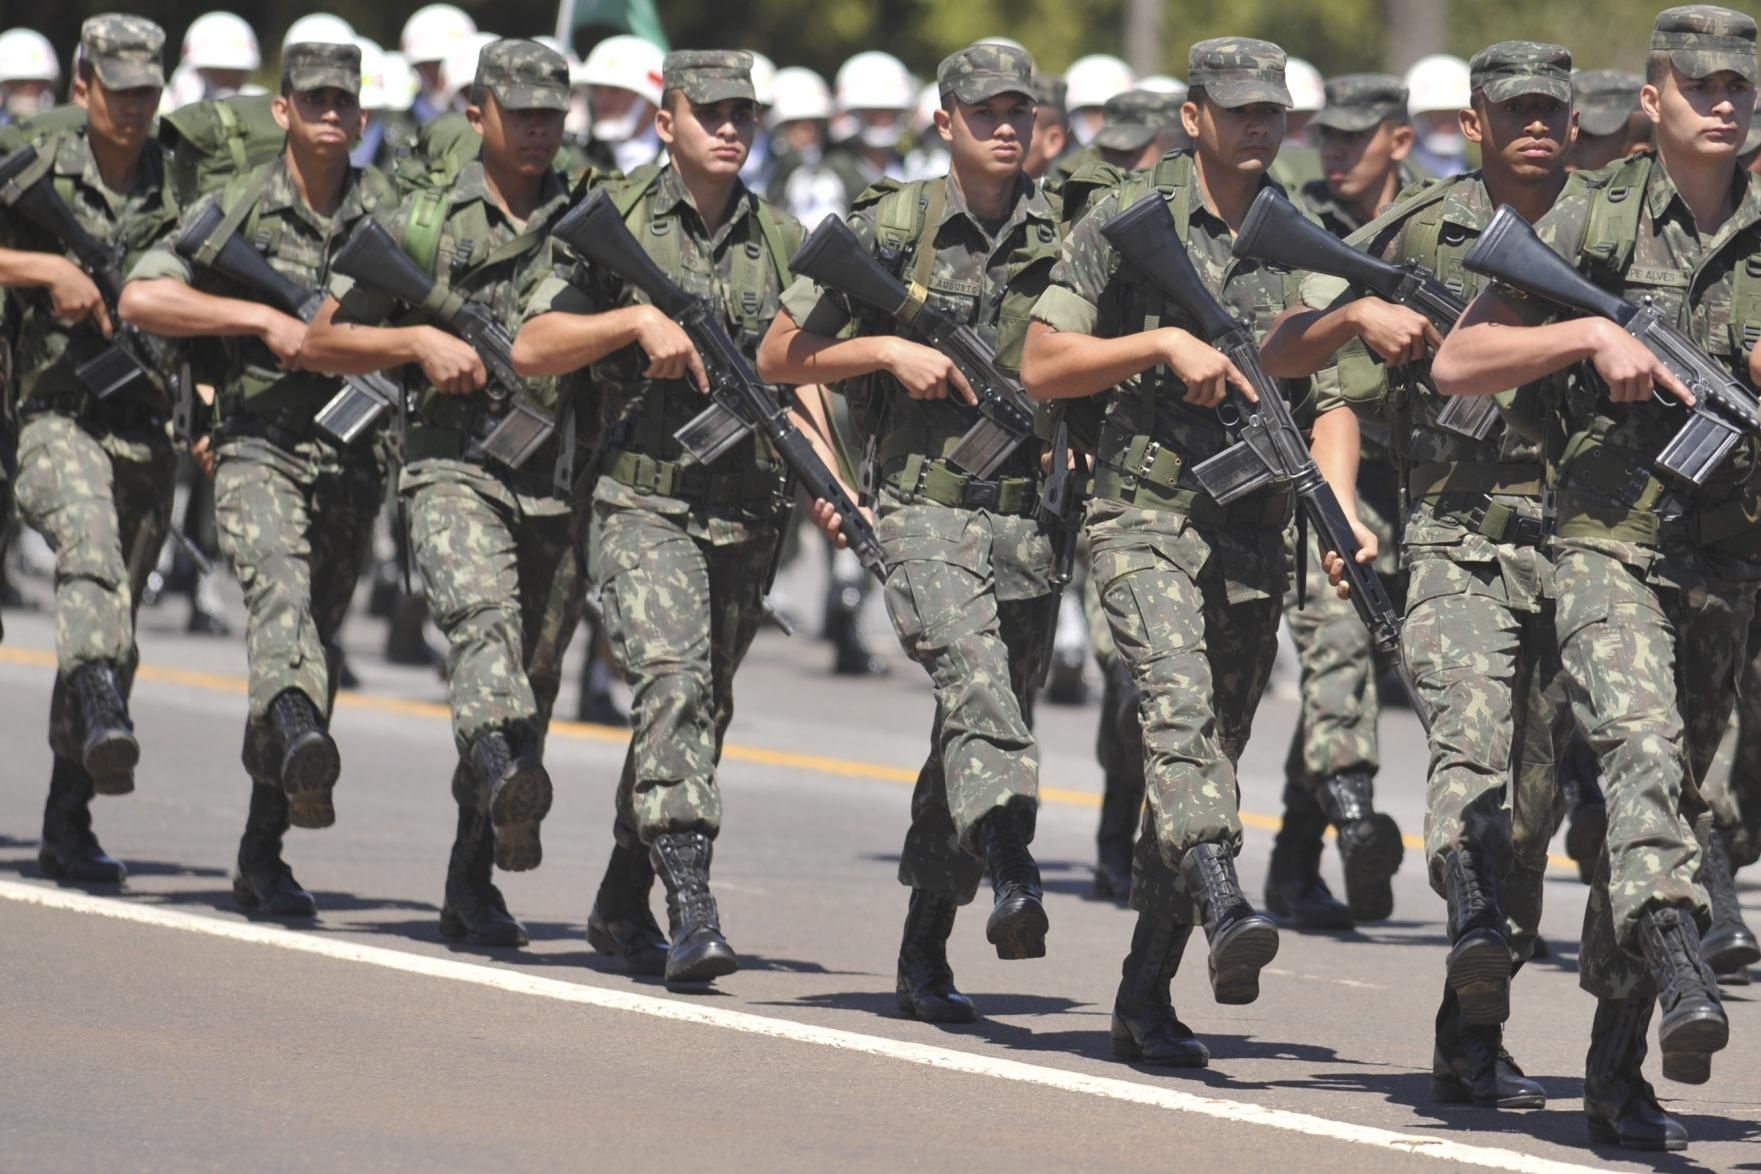 Exército inscreve até agosto para concurso de oficiais e capelães